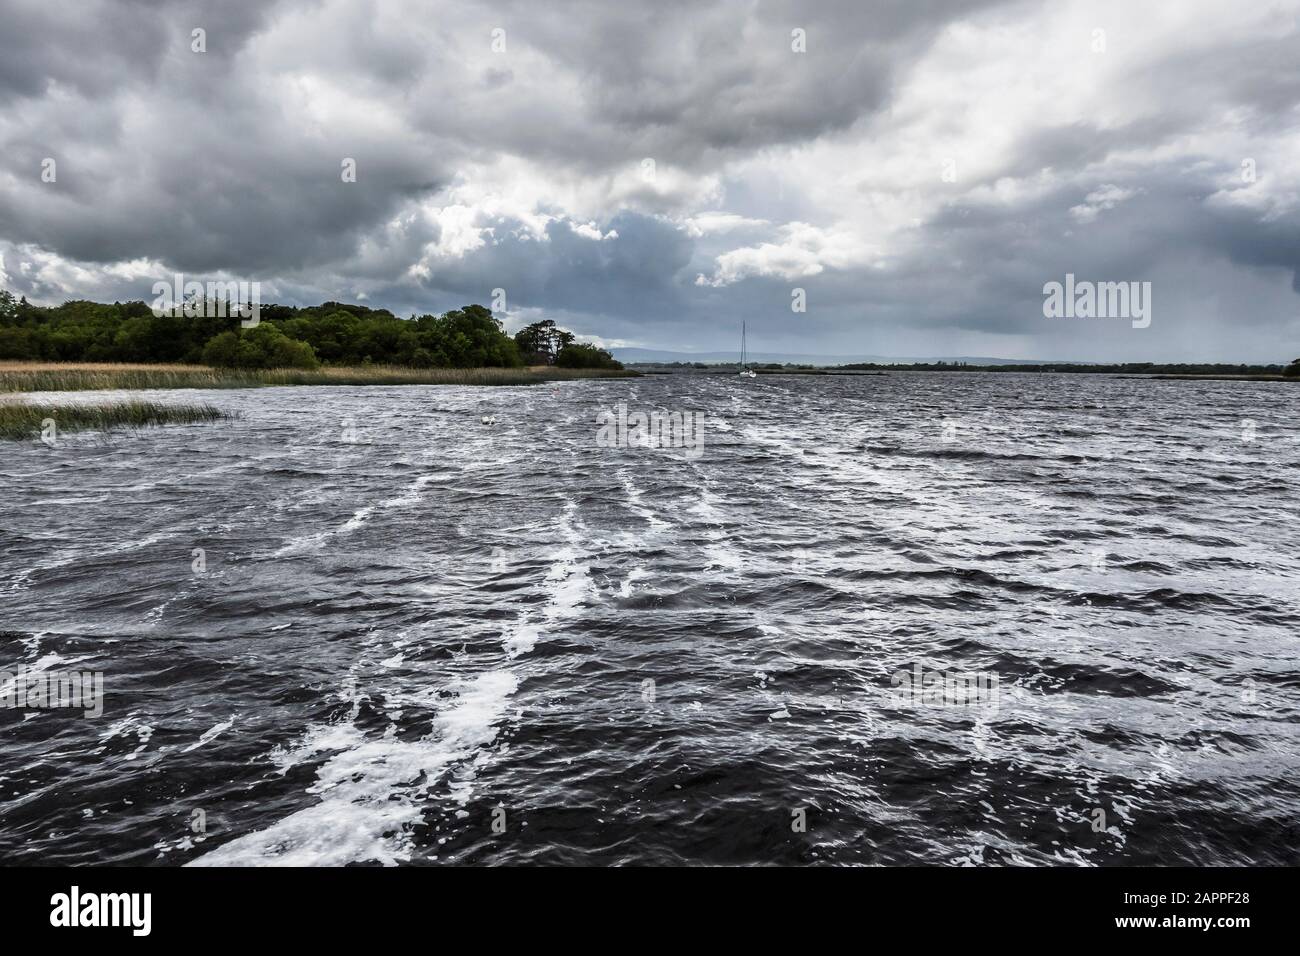 Ein wolkiger und stürziger Tag am Lough Derg, einem großen See am Fluss Shannon, von Kilgarvan Quay, Ballinderry, County Tipperary, Irland Stockfoto